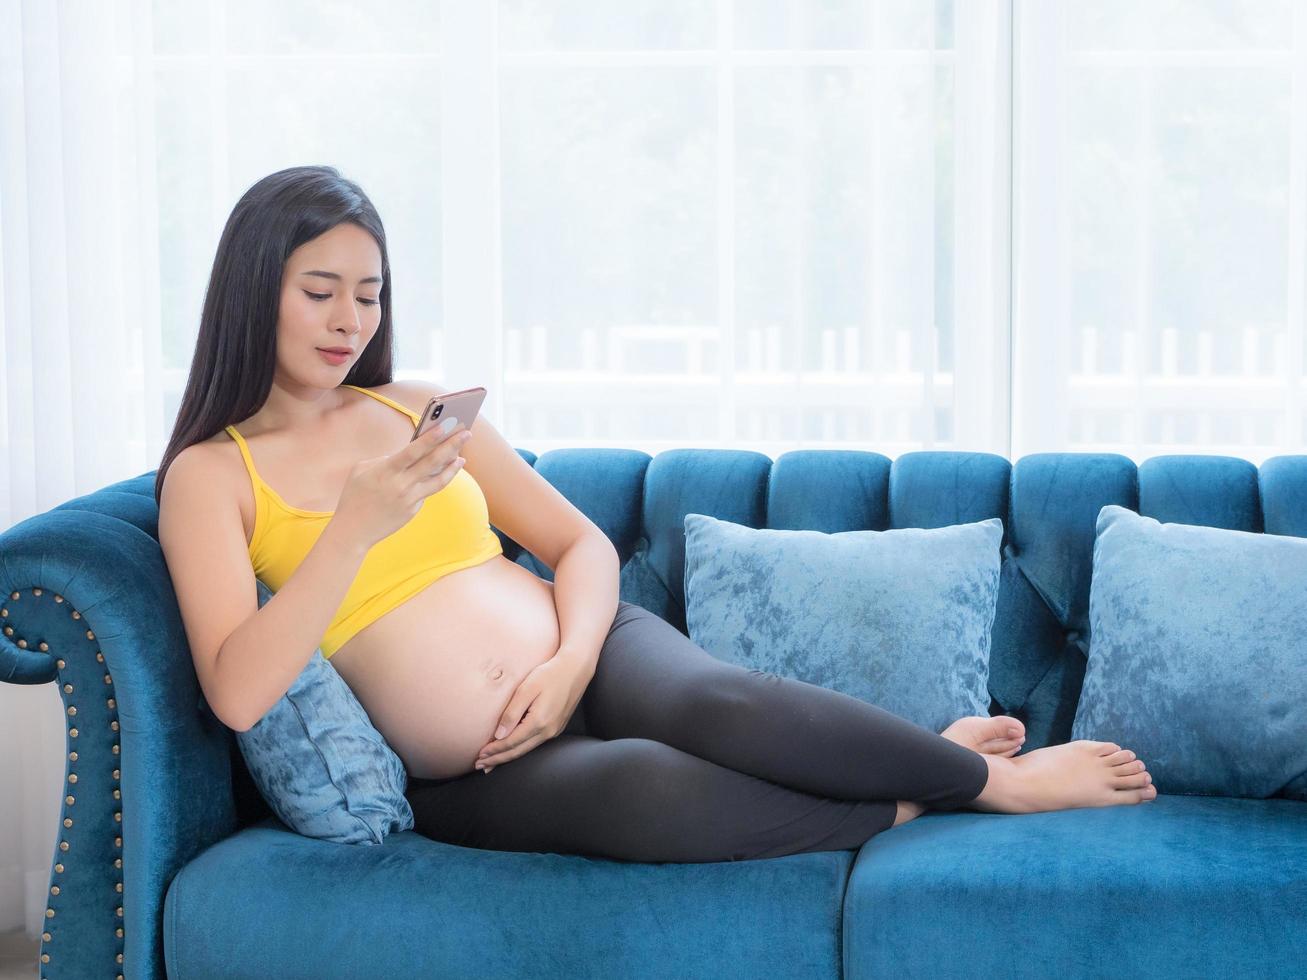 eine schöne schwangere asiatin sitzt auf dem sofa und sucht mit einem handy nach informationen über ihr kind für ihr bevorstehendes baby foto